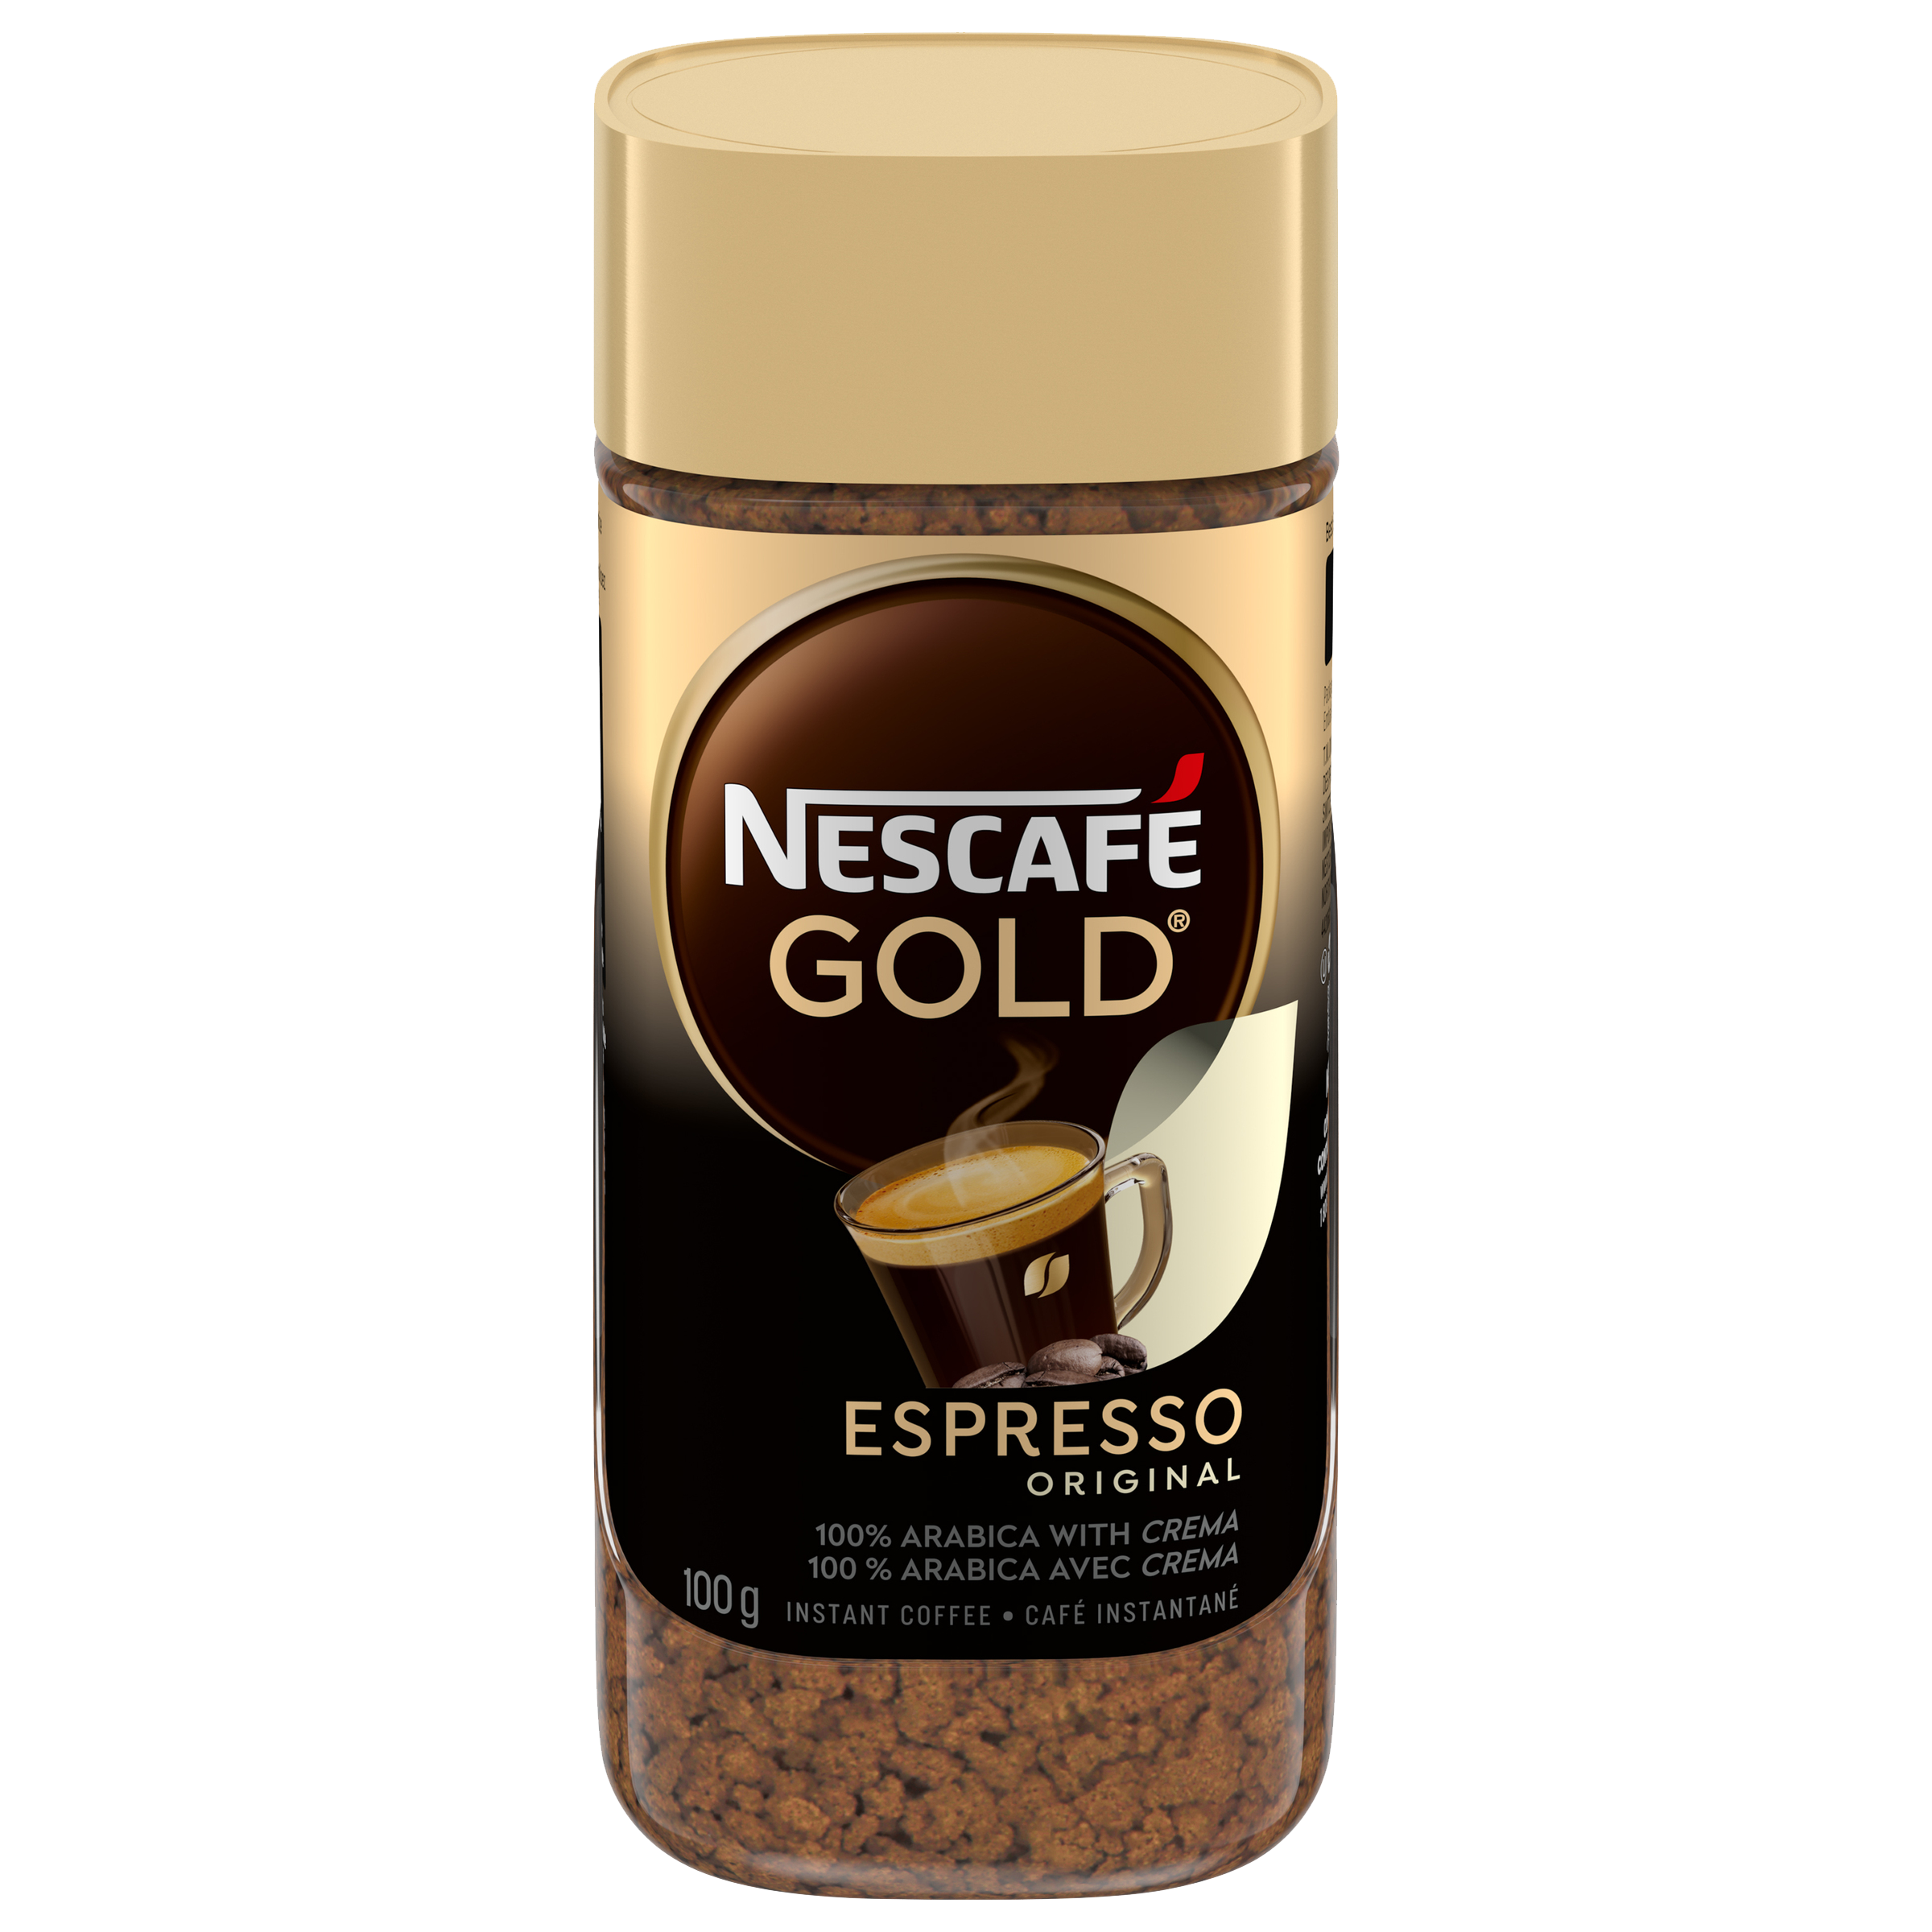 NESCAFÉ GOLD Espresso Instant Coffee Canada Nestlé 